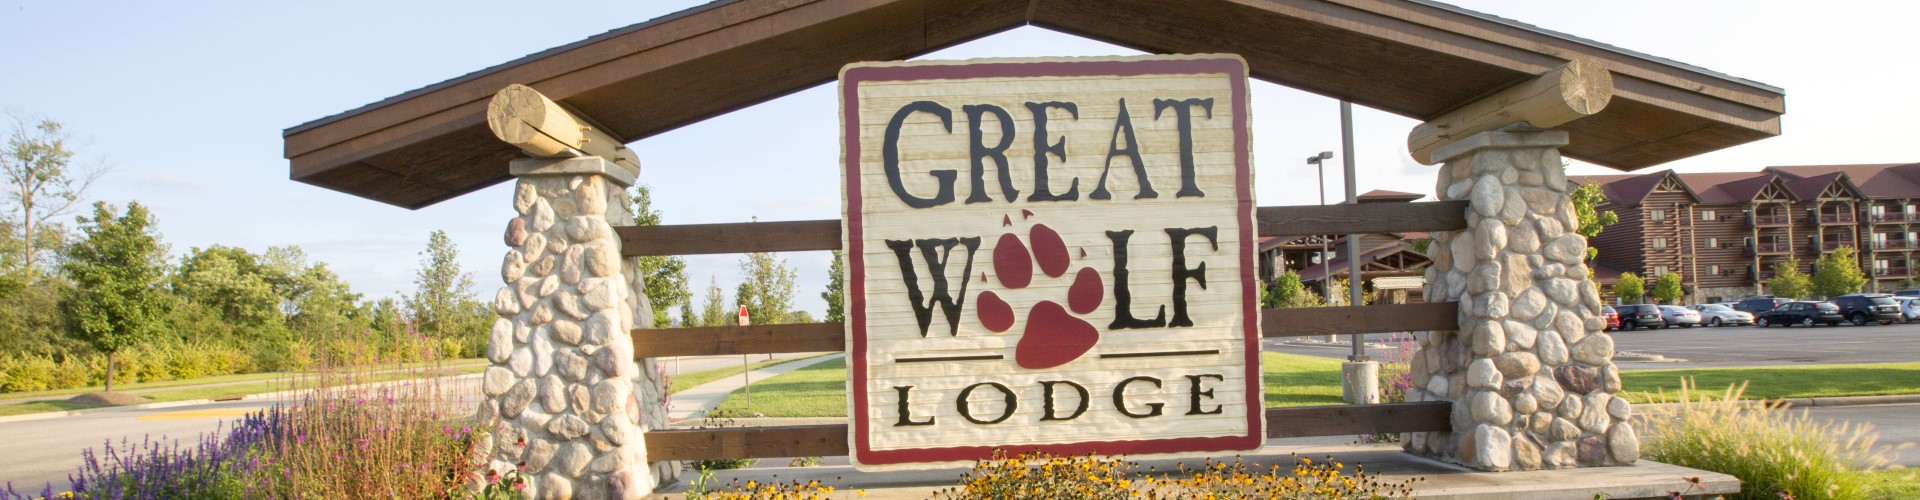 Great wolf lodge Mason, OH